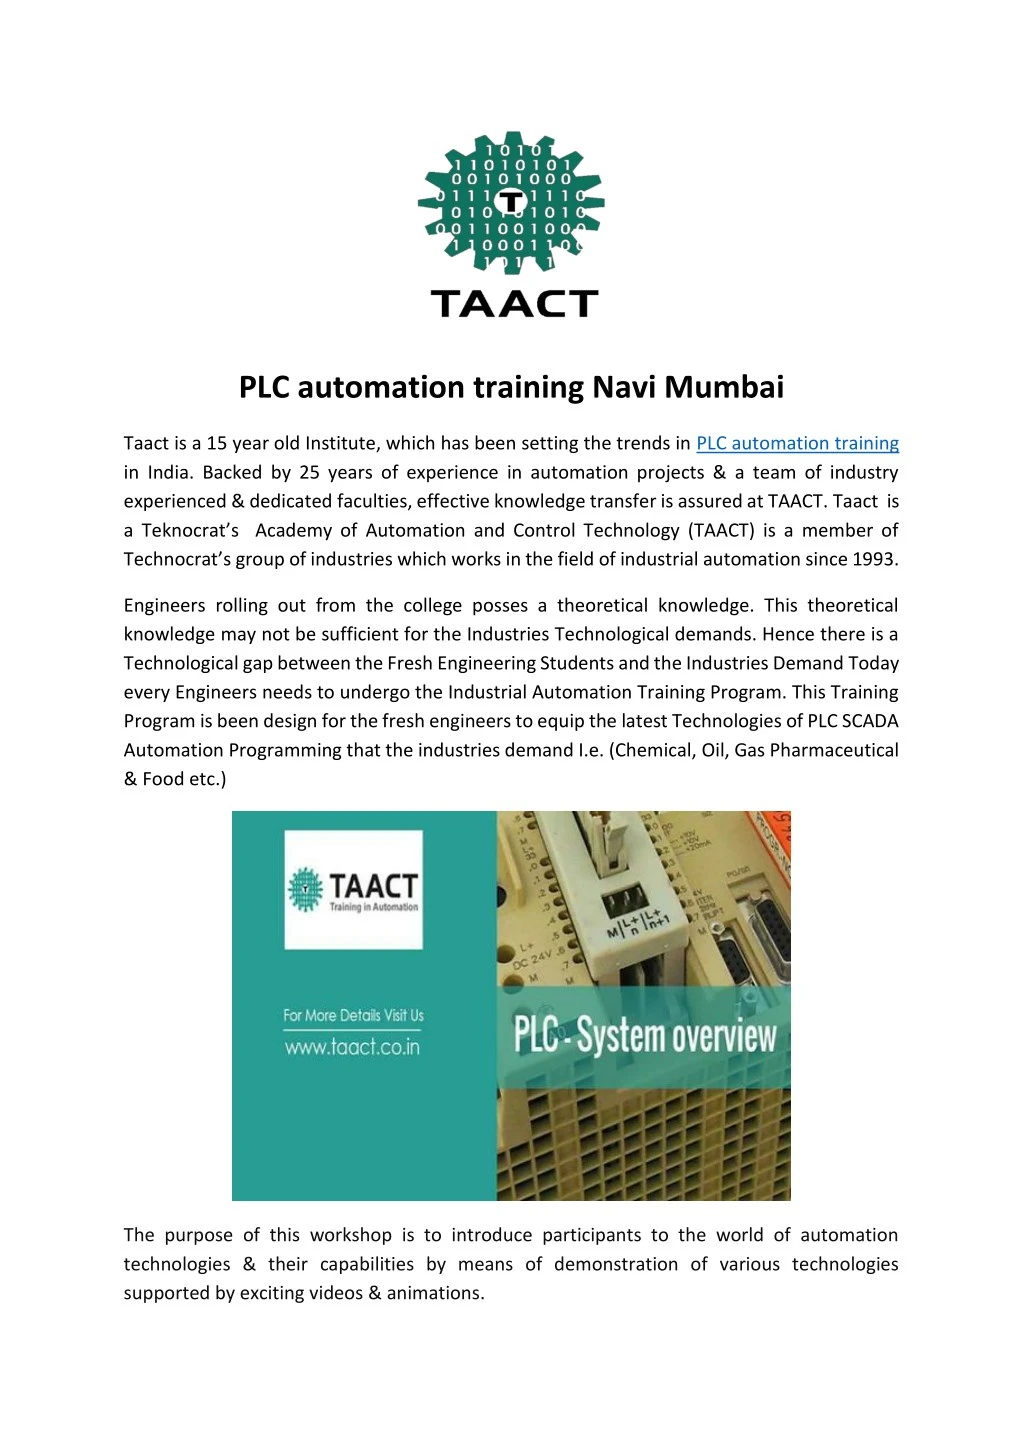 plc automation training navi mumbai